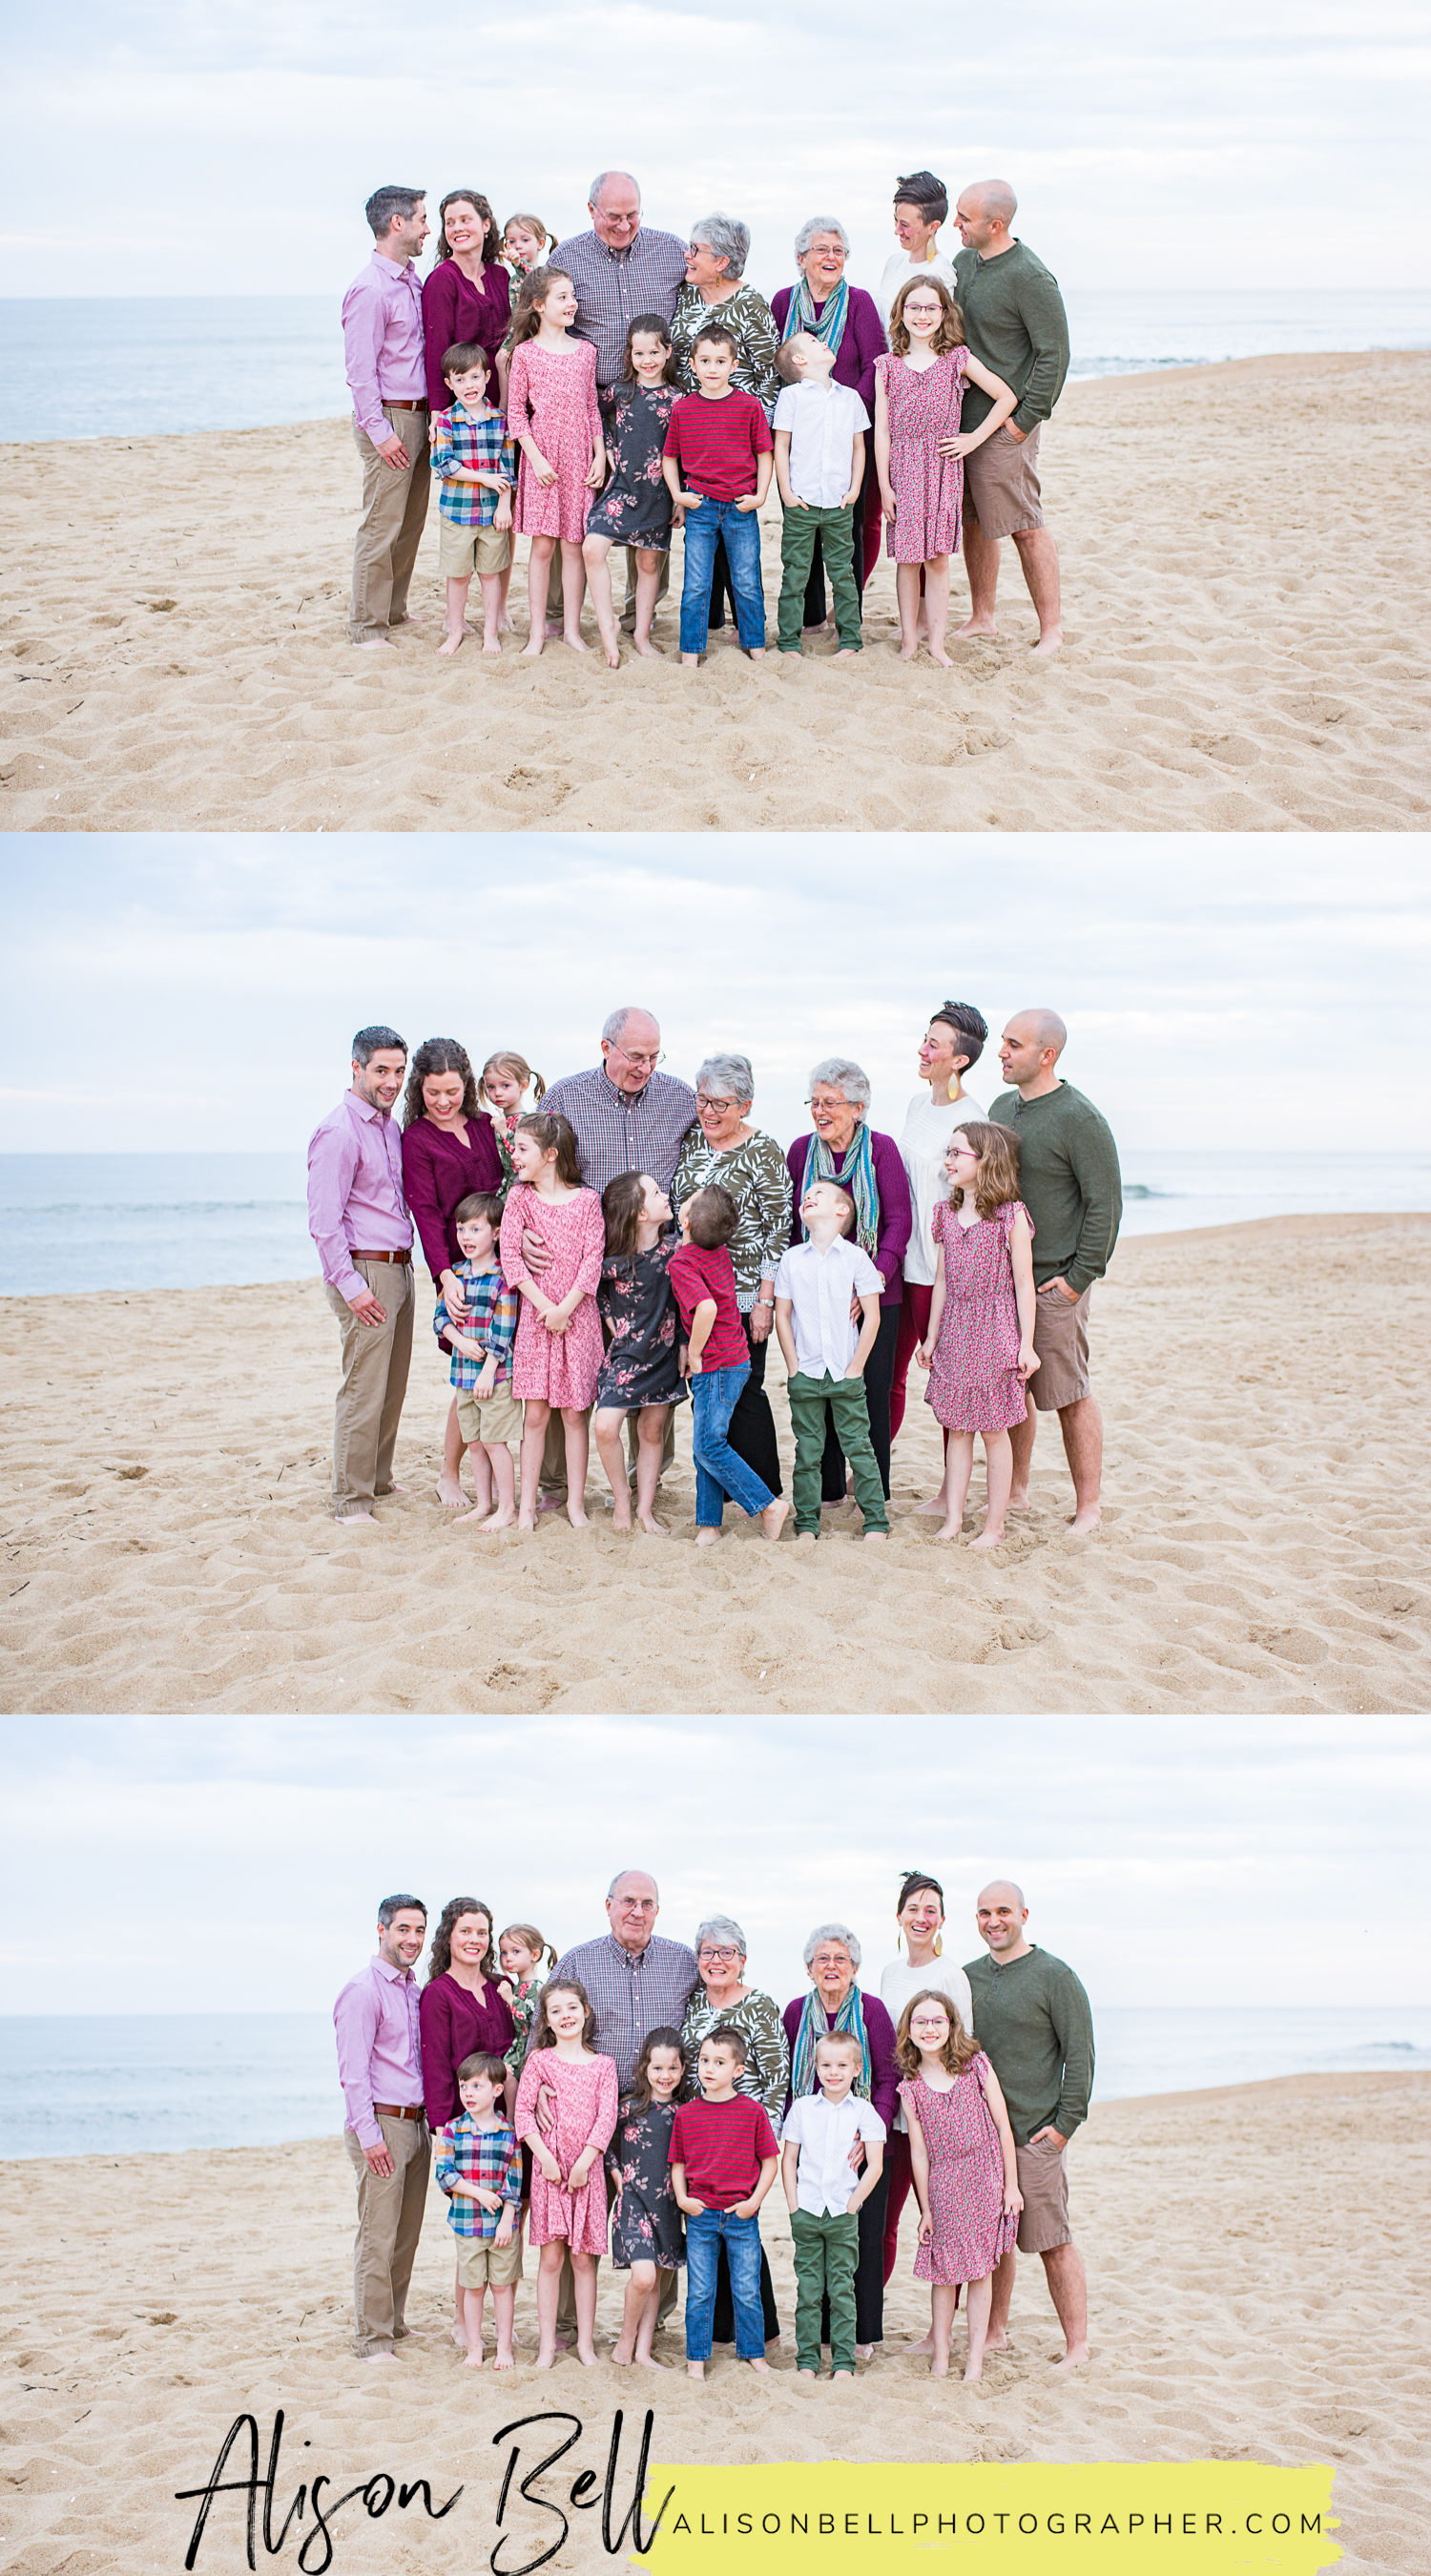 Sandbridge beach photographers for family and group photos on the beach by alison bell, photographer